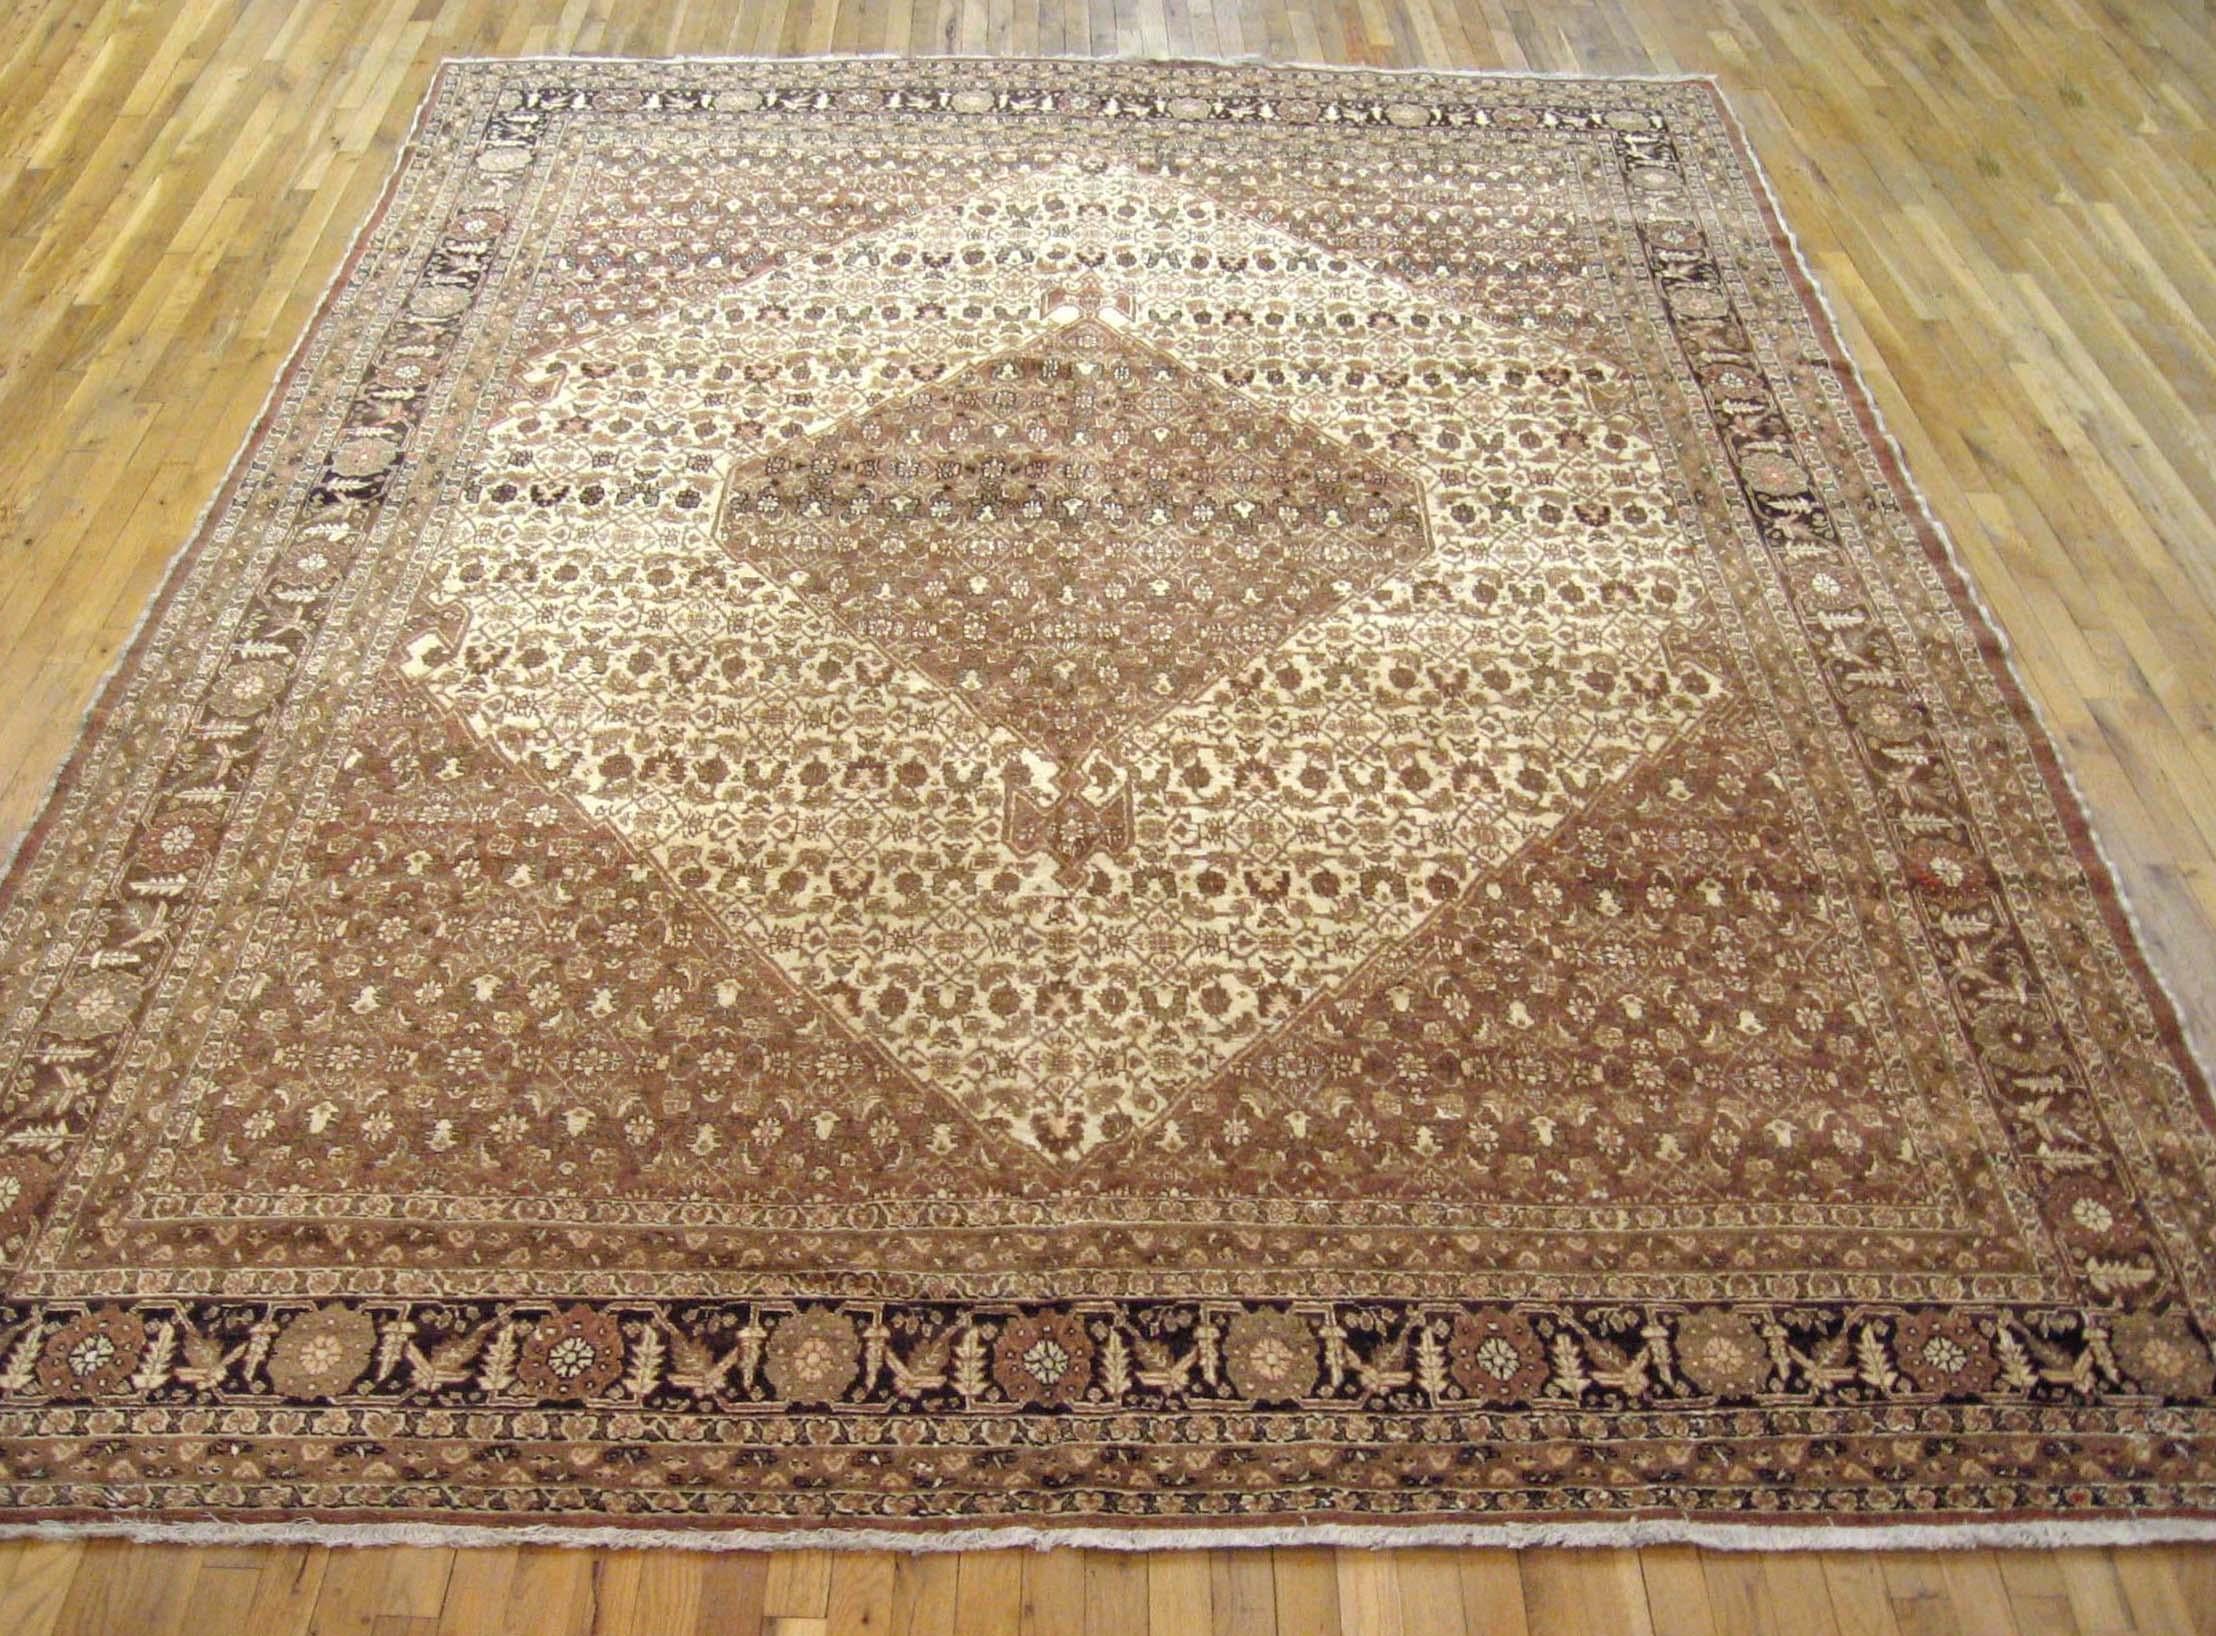 Antique Persian Tabriz oriental carpet, circa 1920, room sized.

An antique Persian Tabriz oriental carpet, circa 1920. Size: 12'1